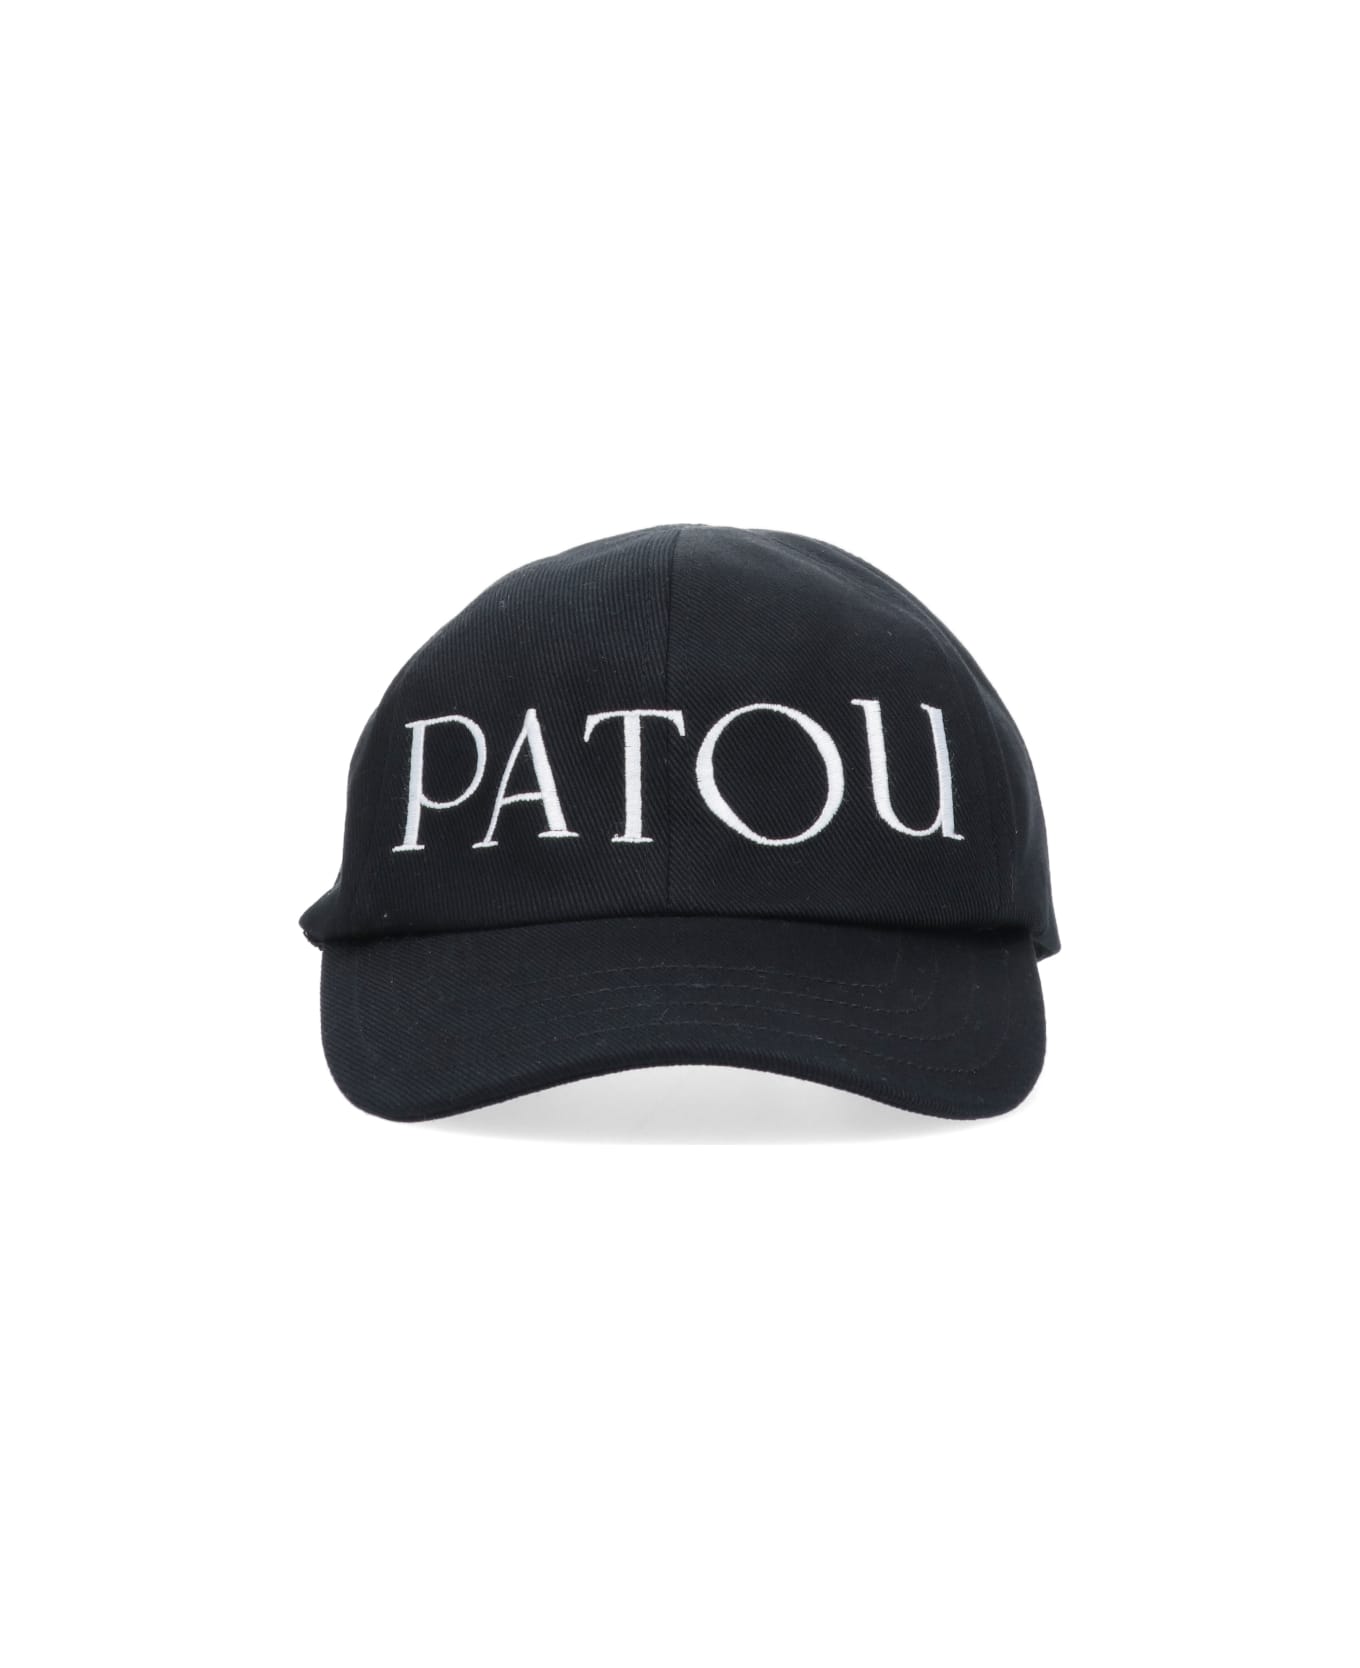 Patou Hat - B Black